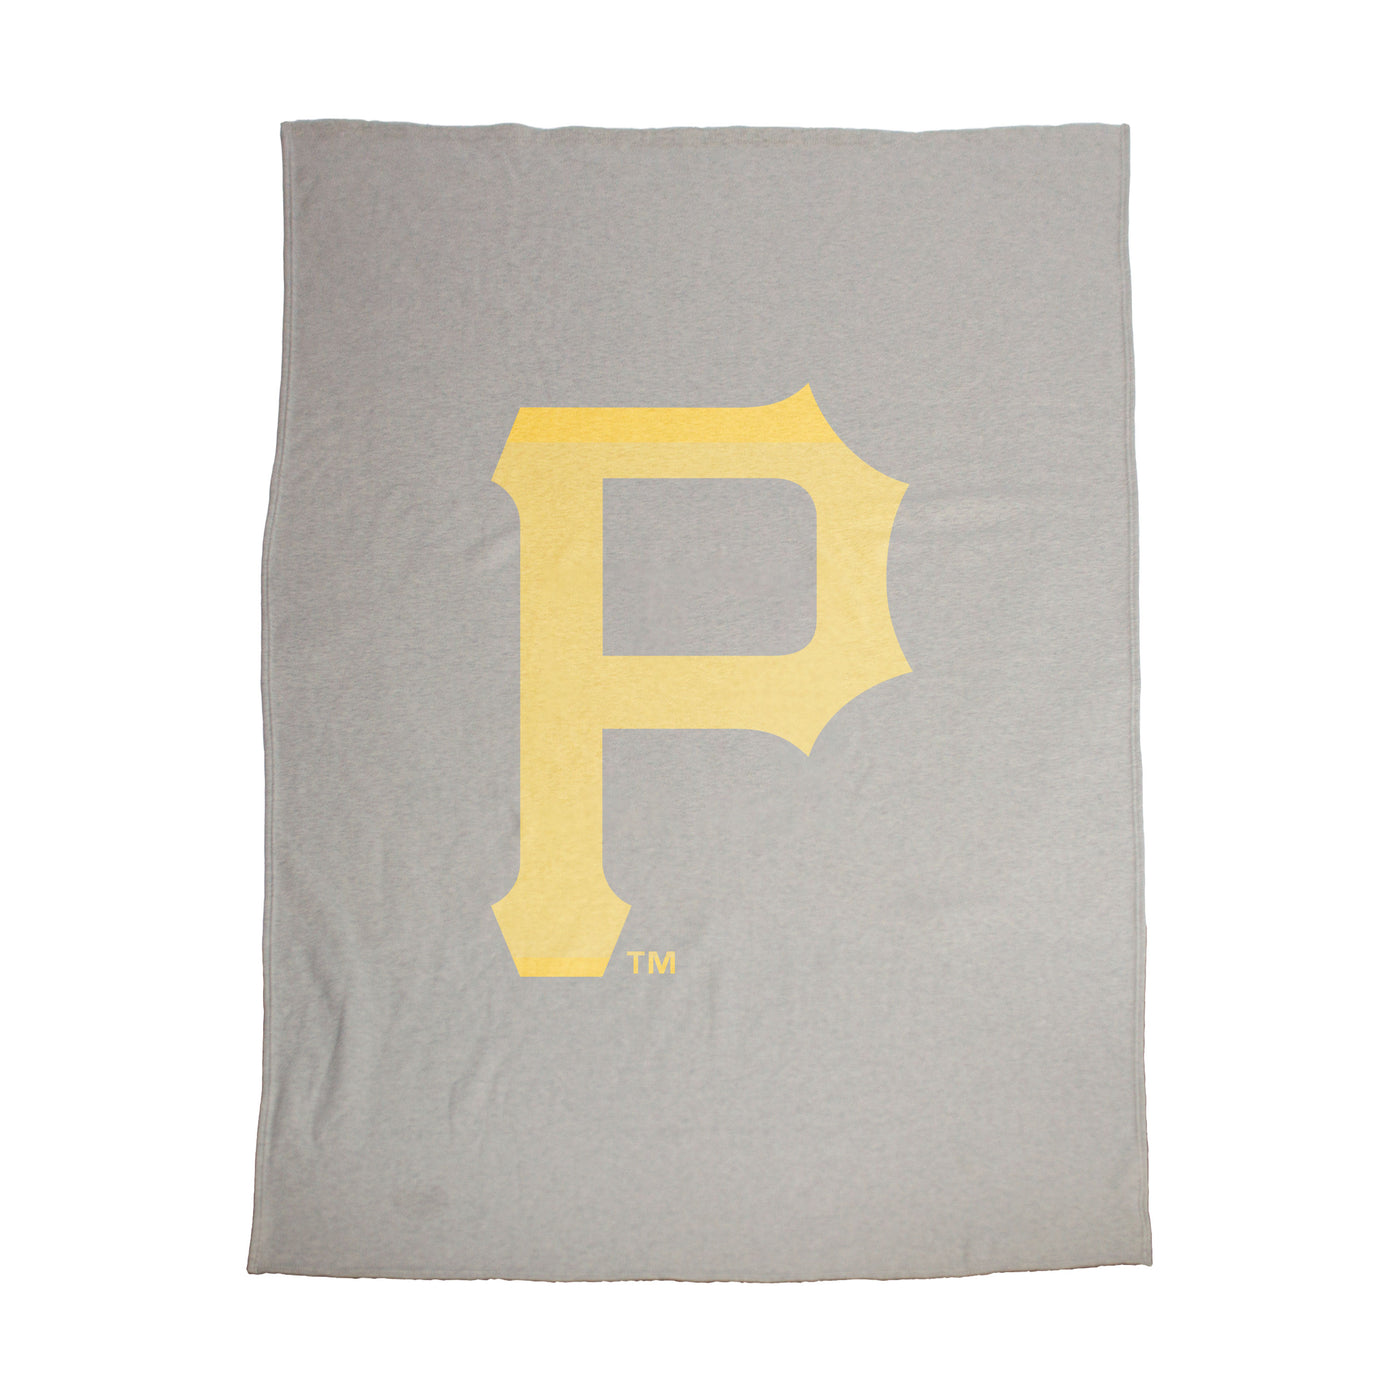 Pittsburgh Pirates Oversized Logo Sublimated Sweatshirt Blanket